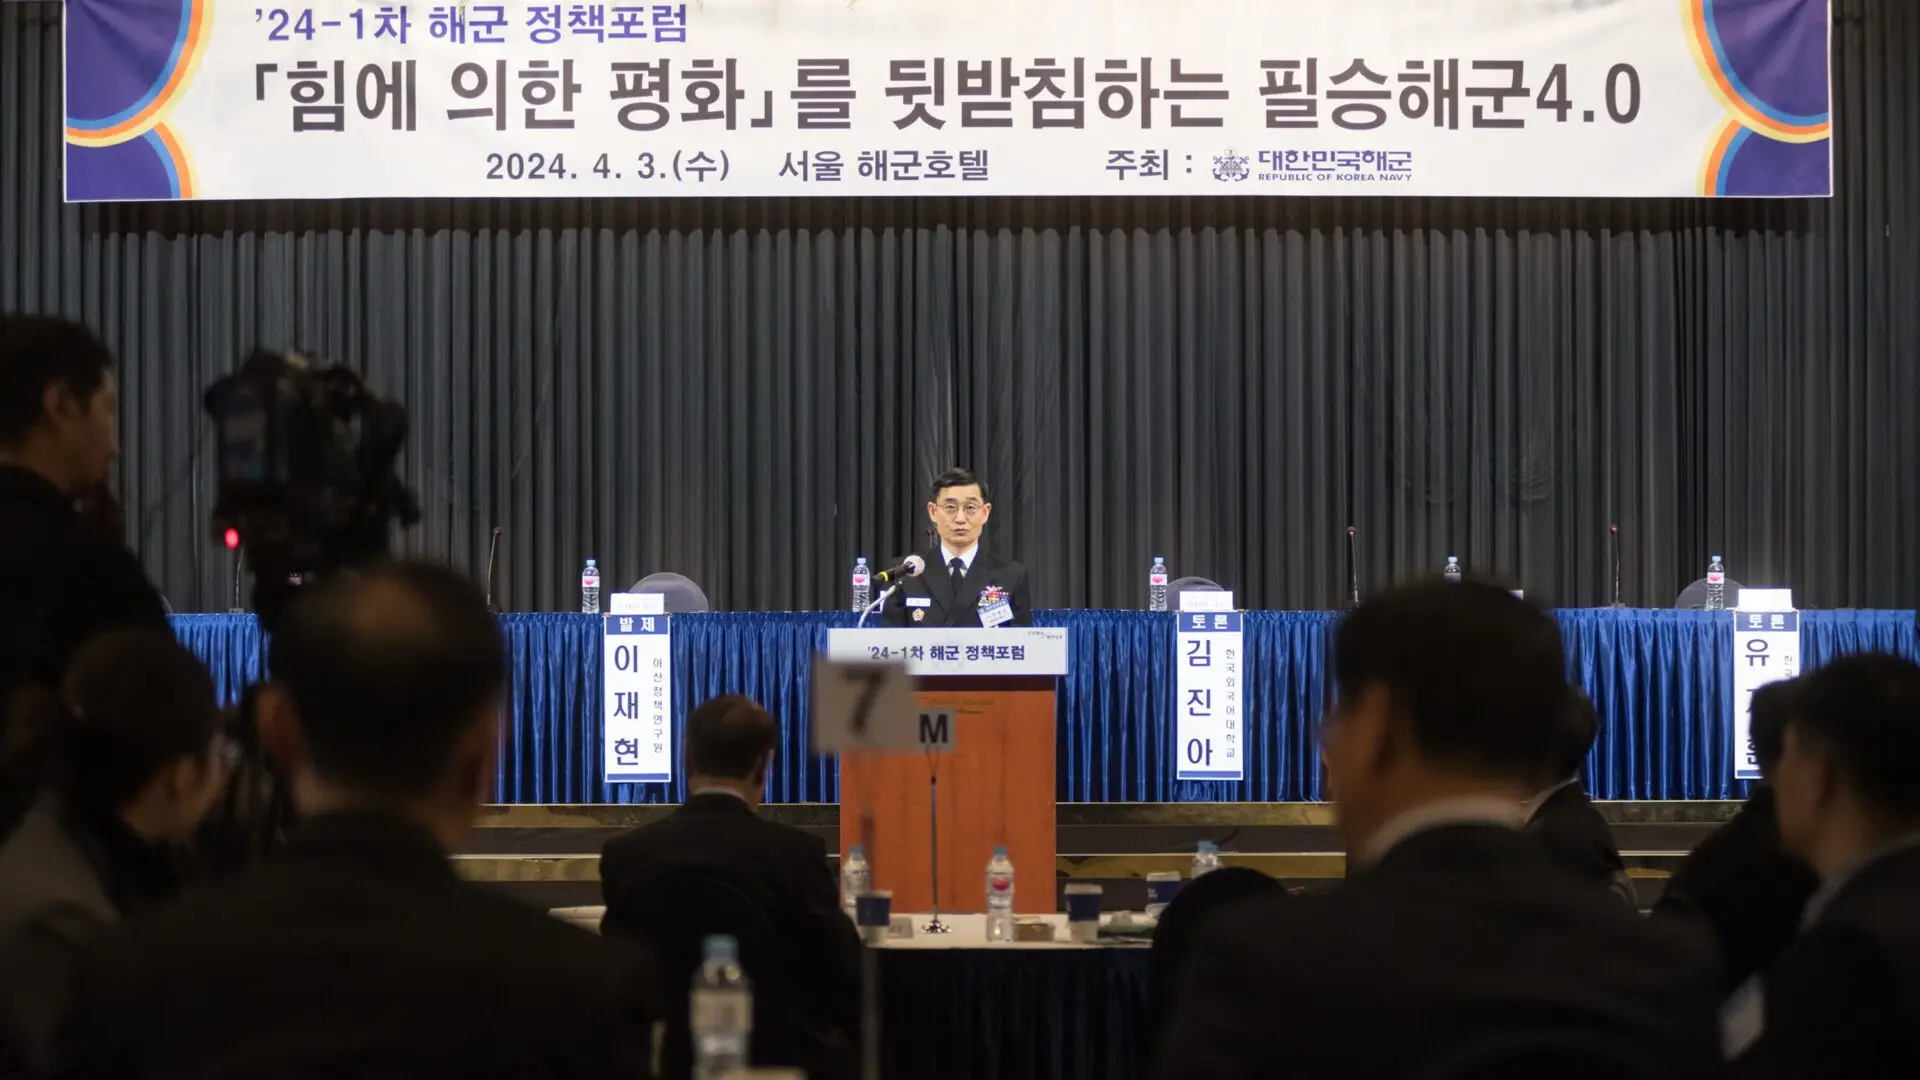 해군참모총장 환영사 해군정책포럼 240403 - South Korean navy discusses maritime security amidst new emerging threats